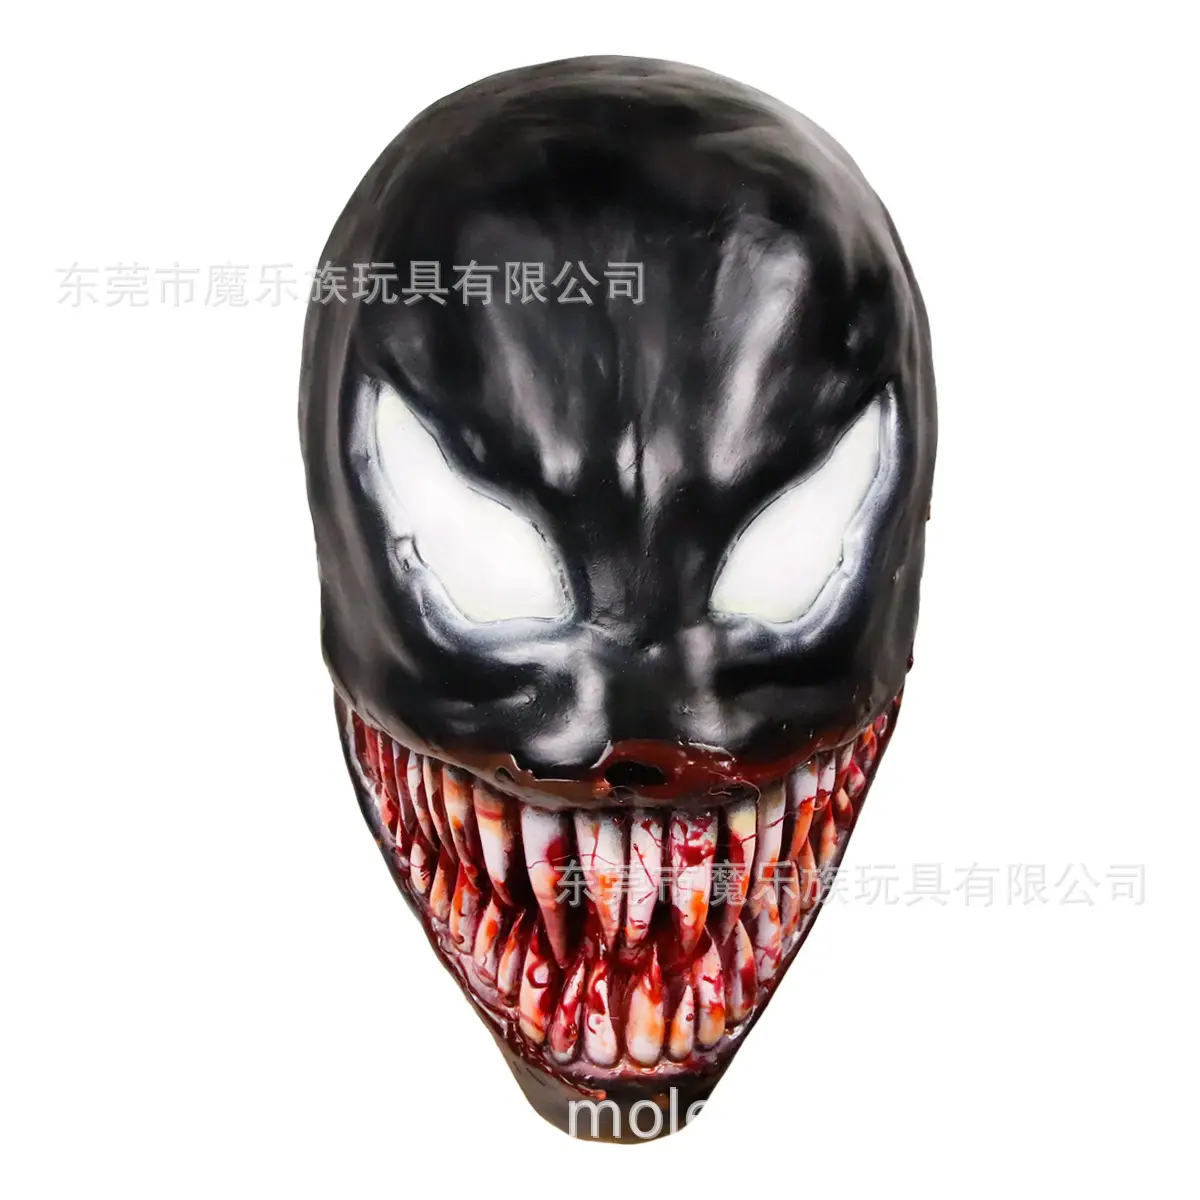 Großhandel Black Venom Held Black Spider Maske männlich Venom tödlich Guardian Wunder